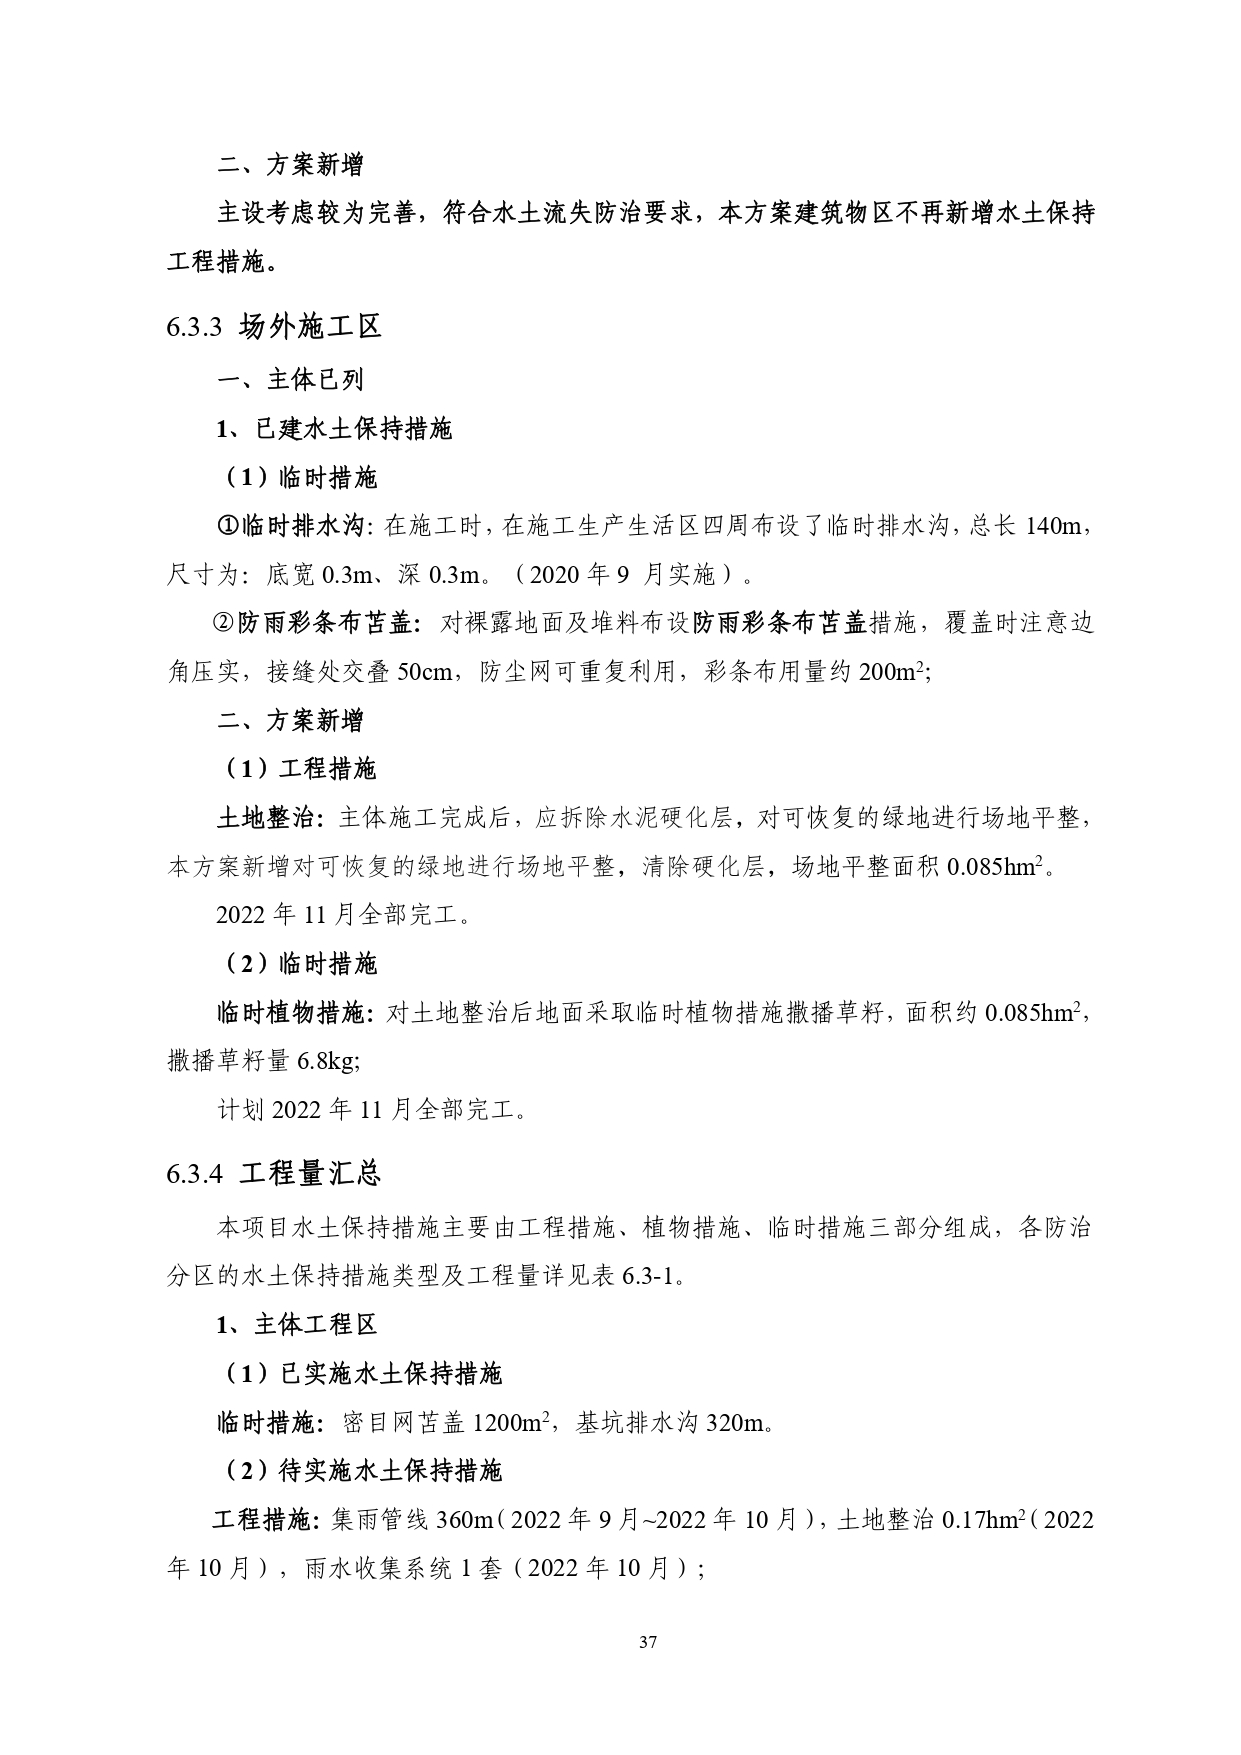 01-中果广场大厦项目水土保持报告表-打印_page-0048.jpg